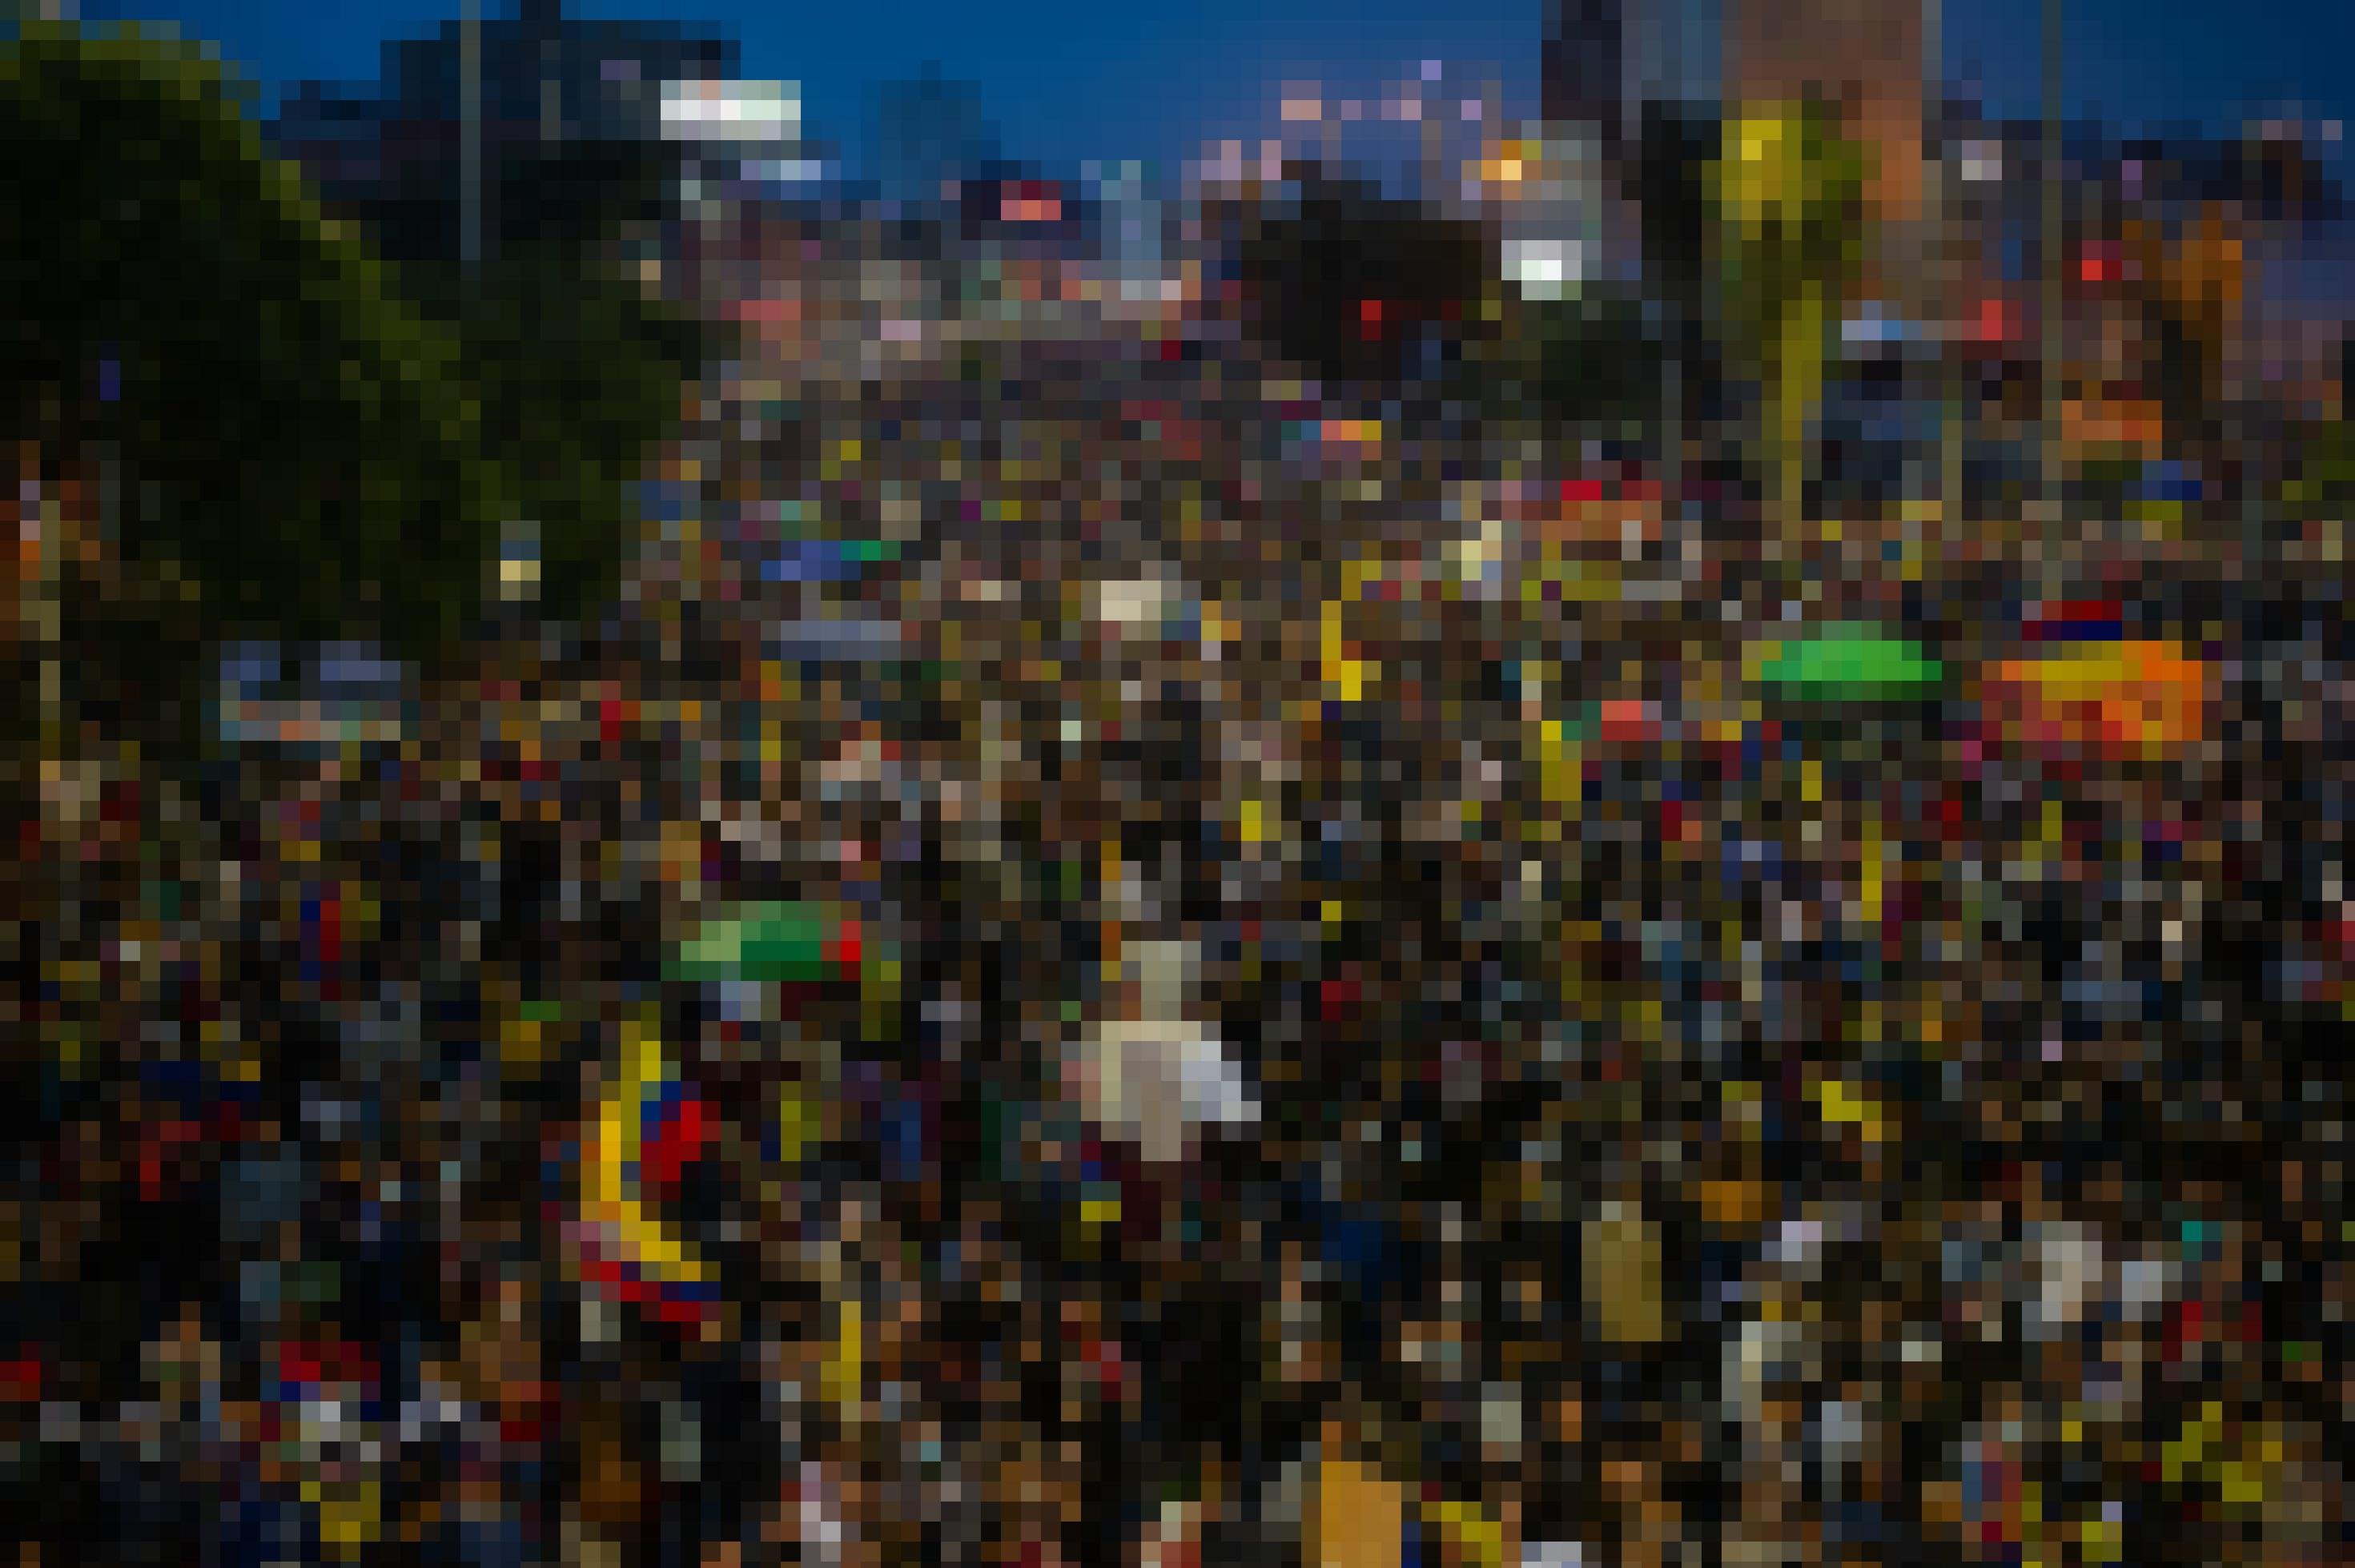 Eine Menschenmenge von Demonstrierenden bei Nacht.